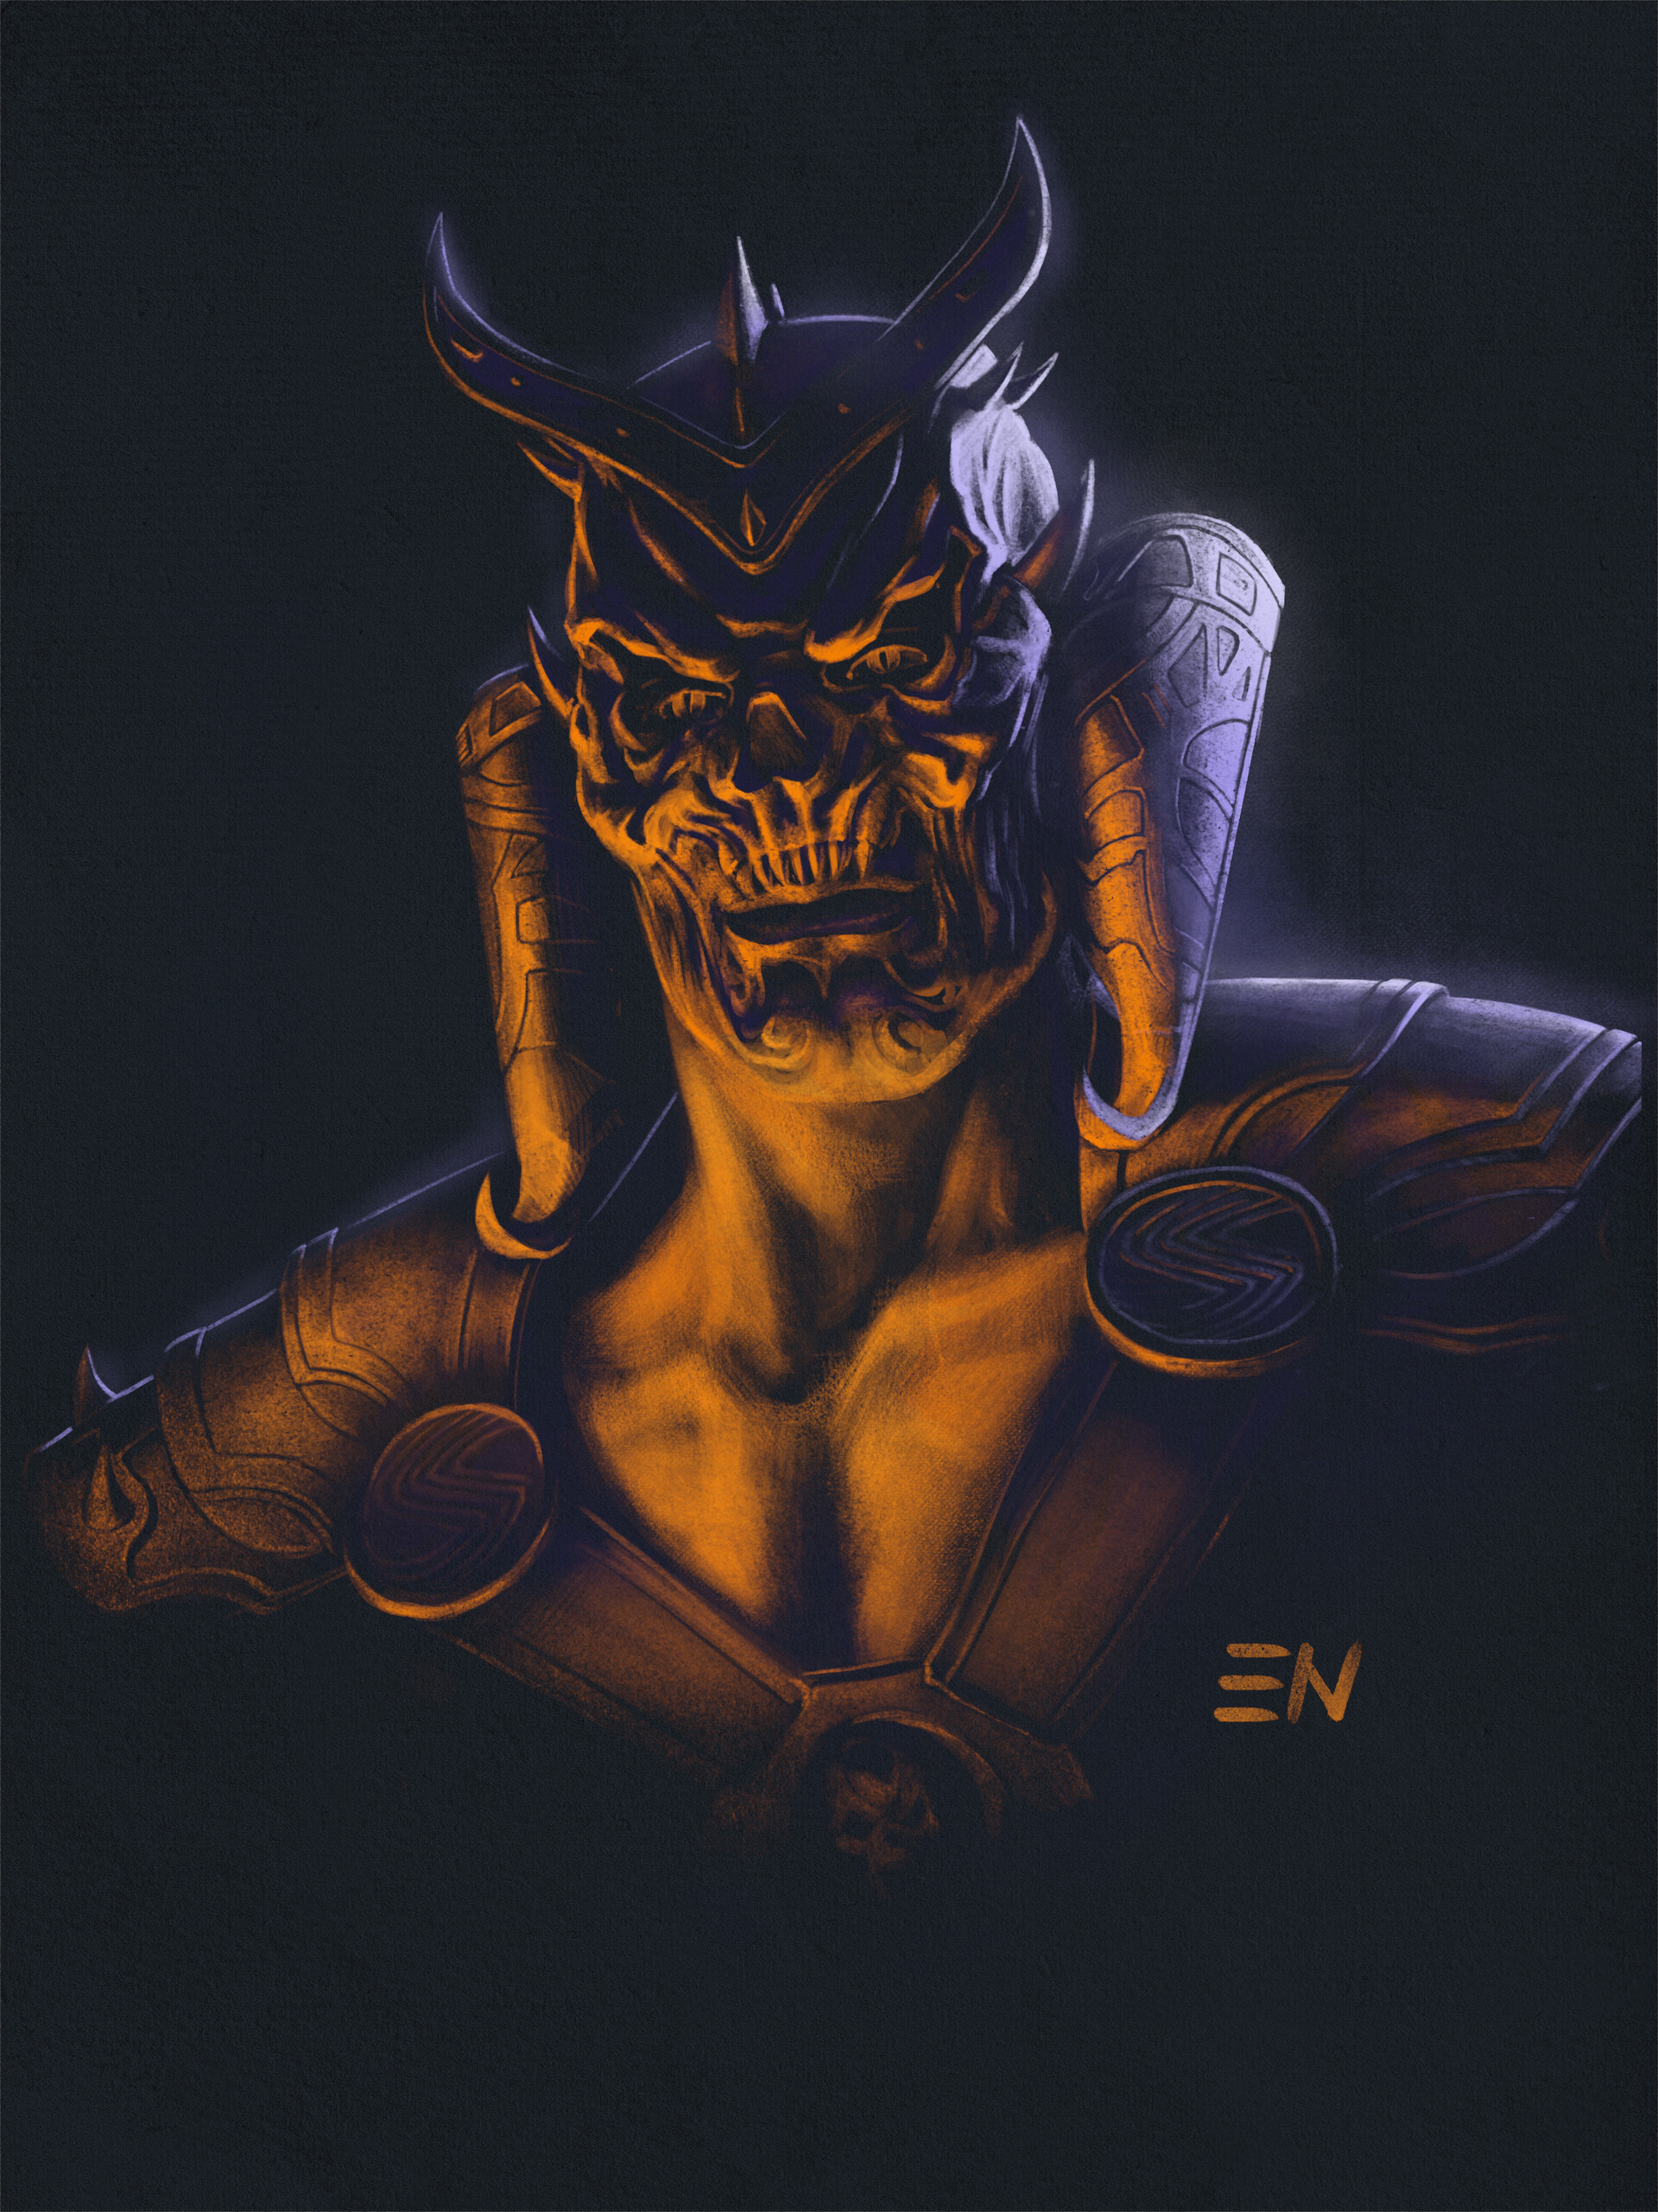 ArtStation - Mortal Kombat - Shao Kahn